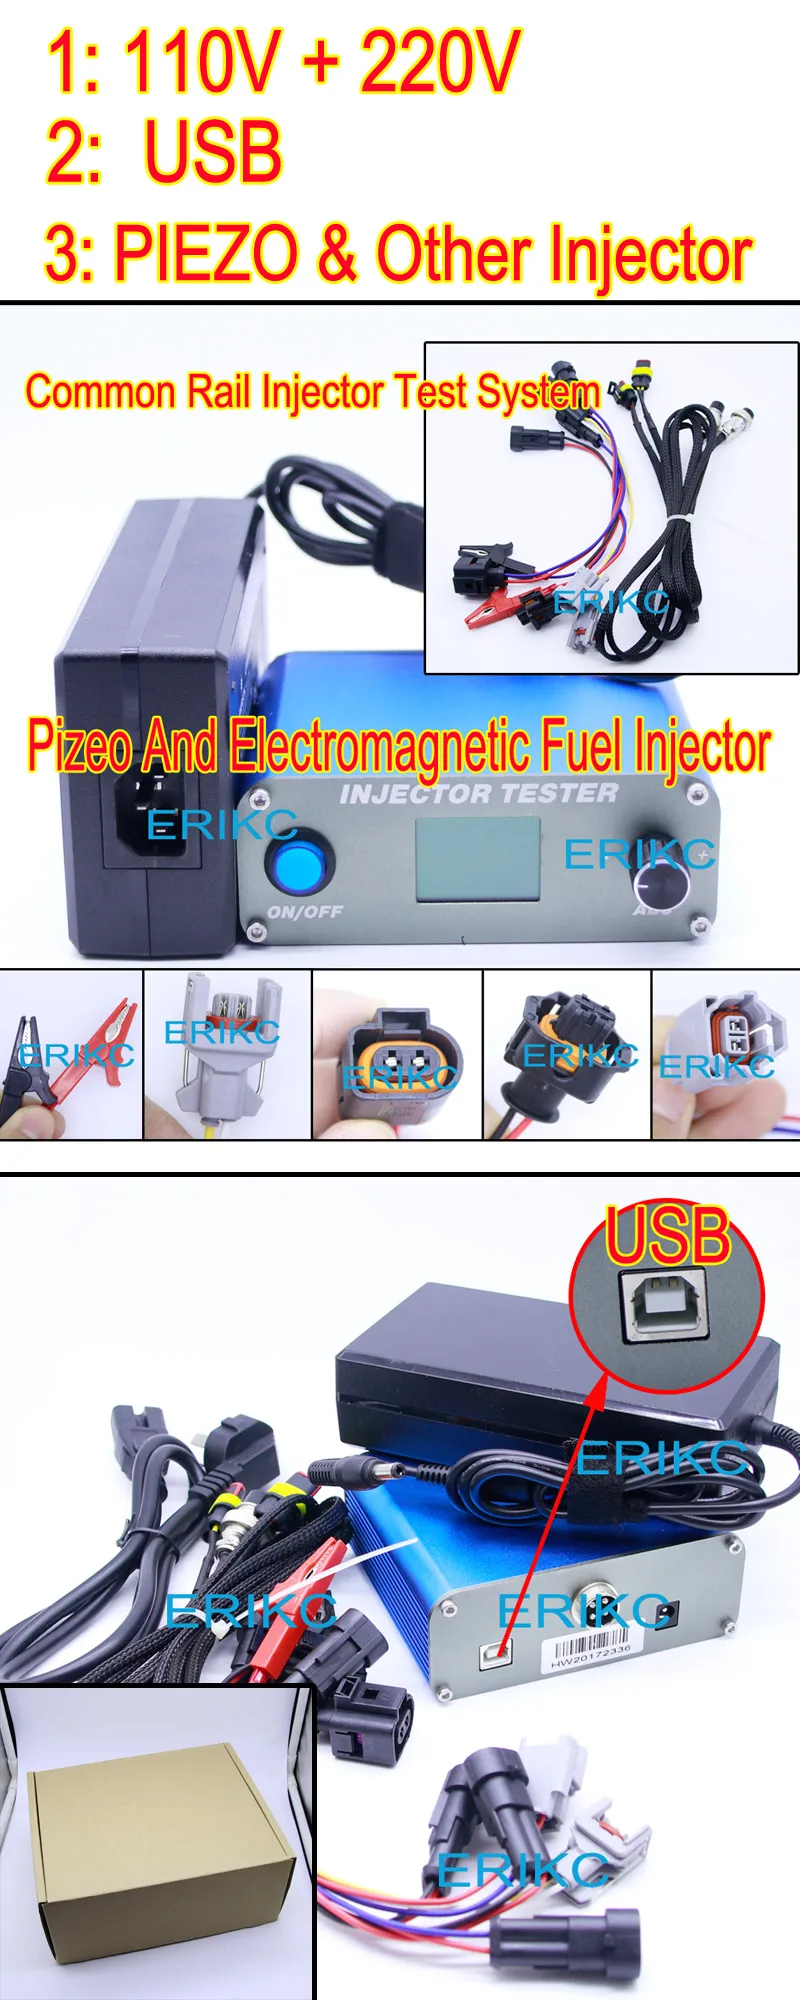 ERIKC насос пьезоинжектор симулятор и внедорожник, дизель инъекции тестер сопла, инжектор калибровочный аппарат в топливной системе